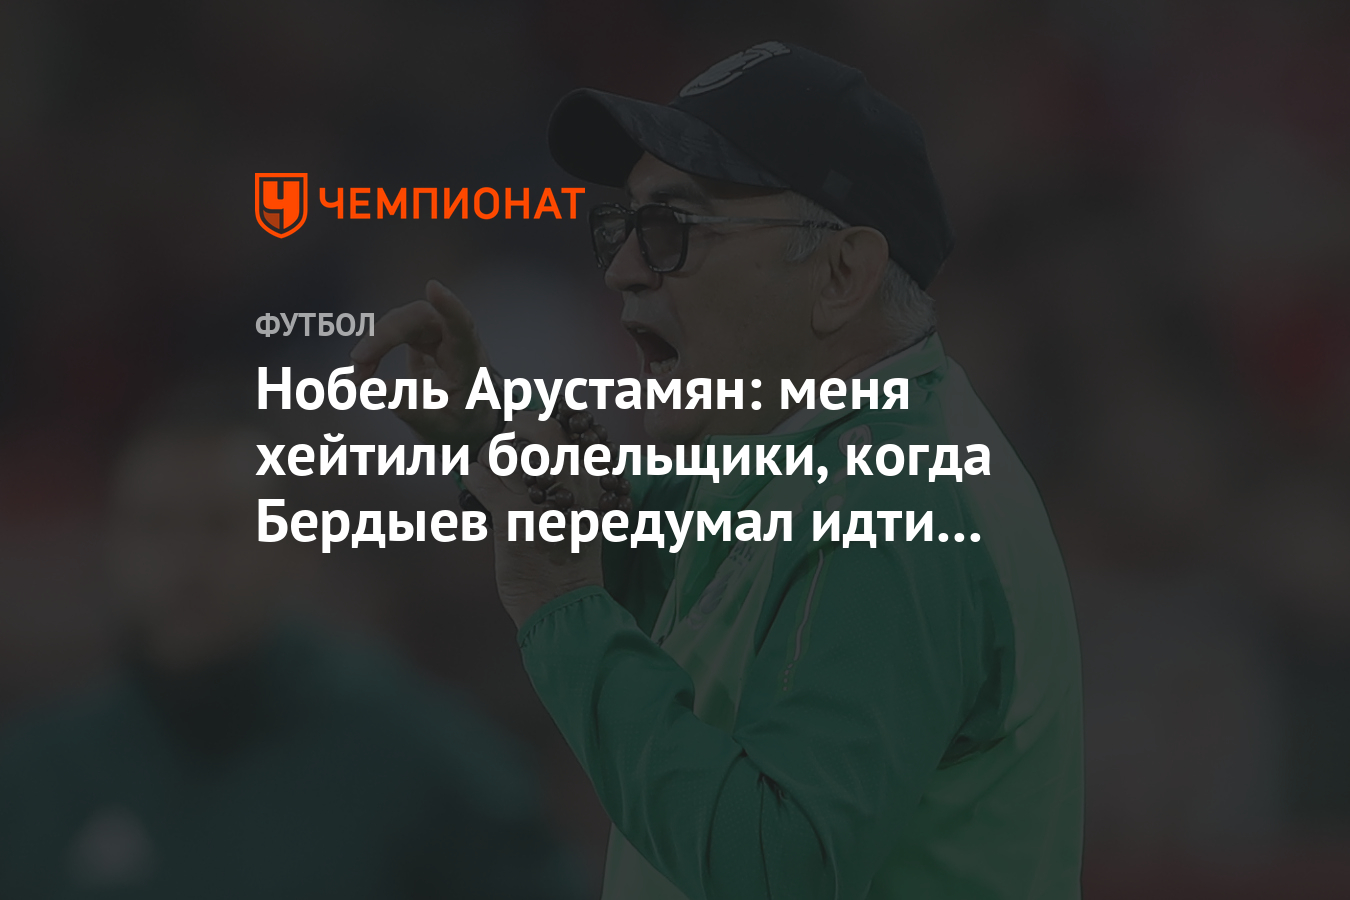 Нобель Арустамян: меня Хейта болельщики, когда Бердыев передумал идти в «Спартак»